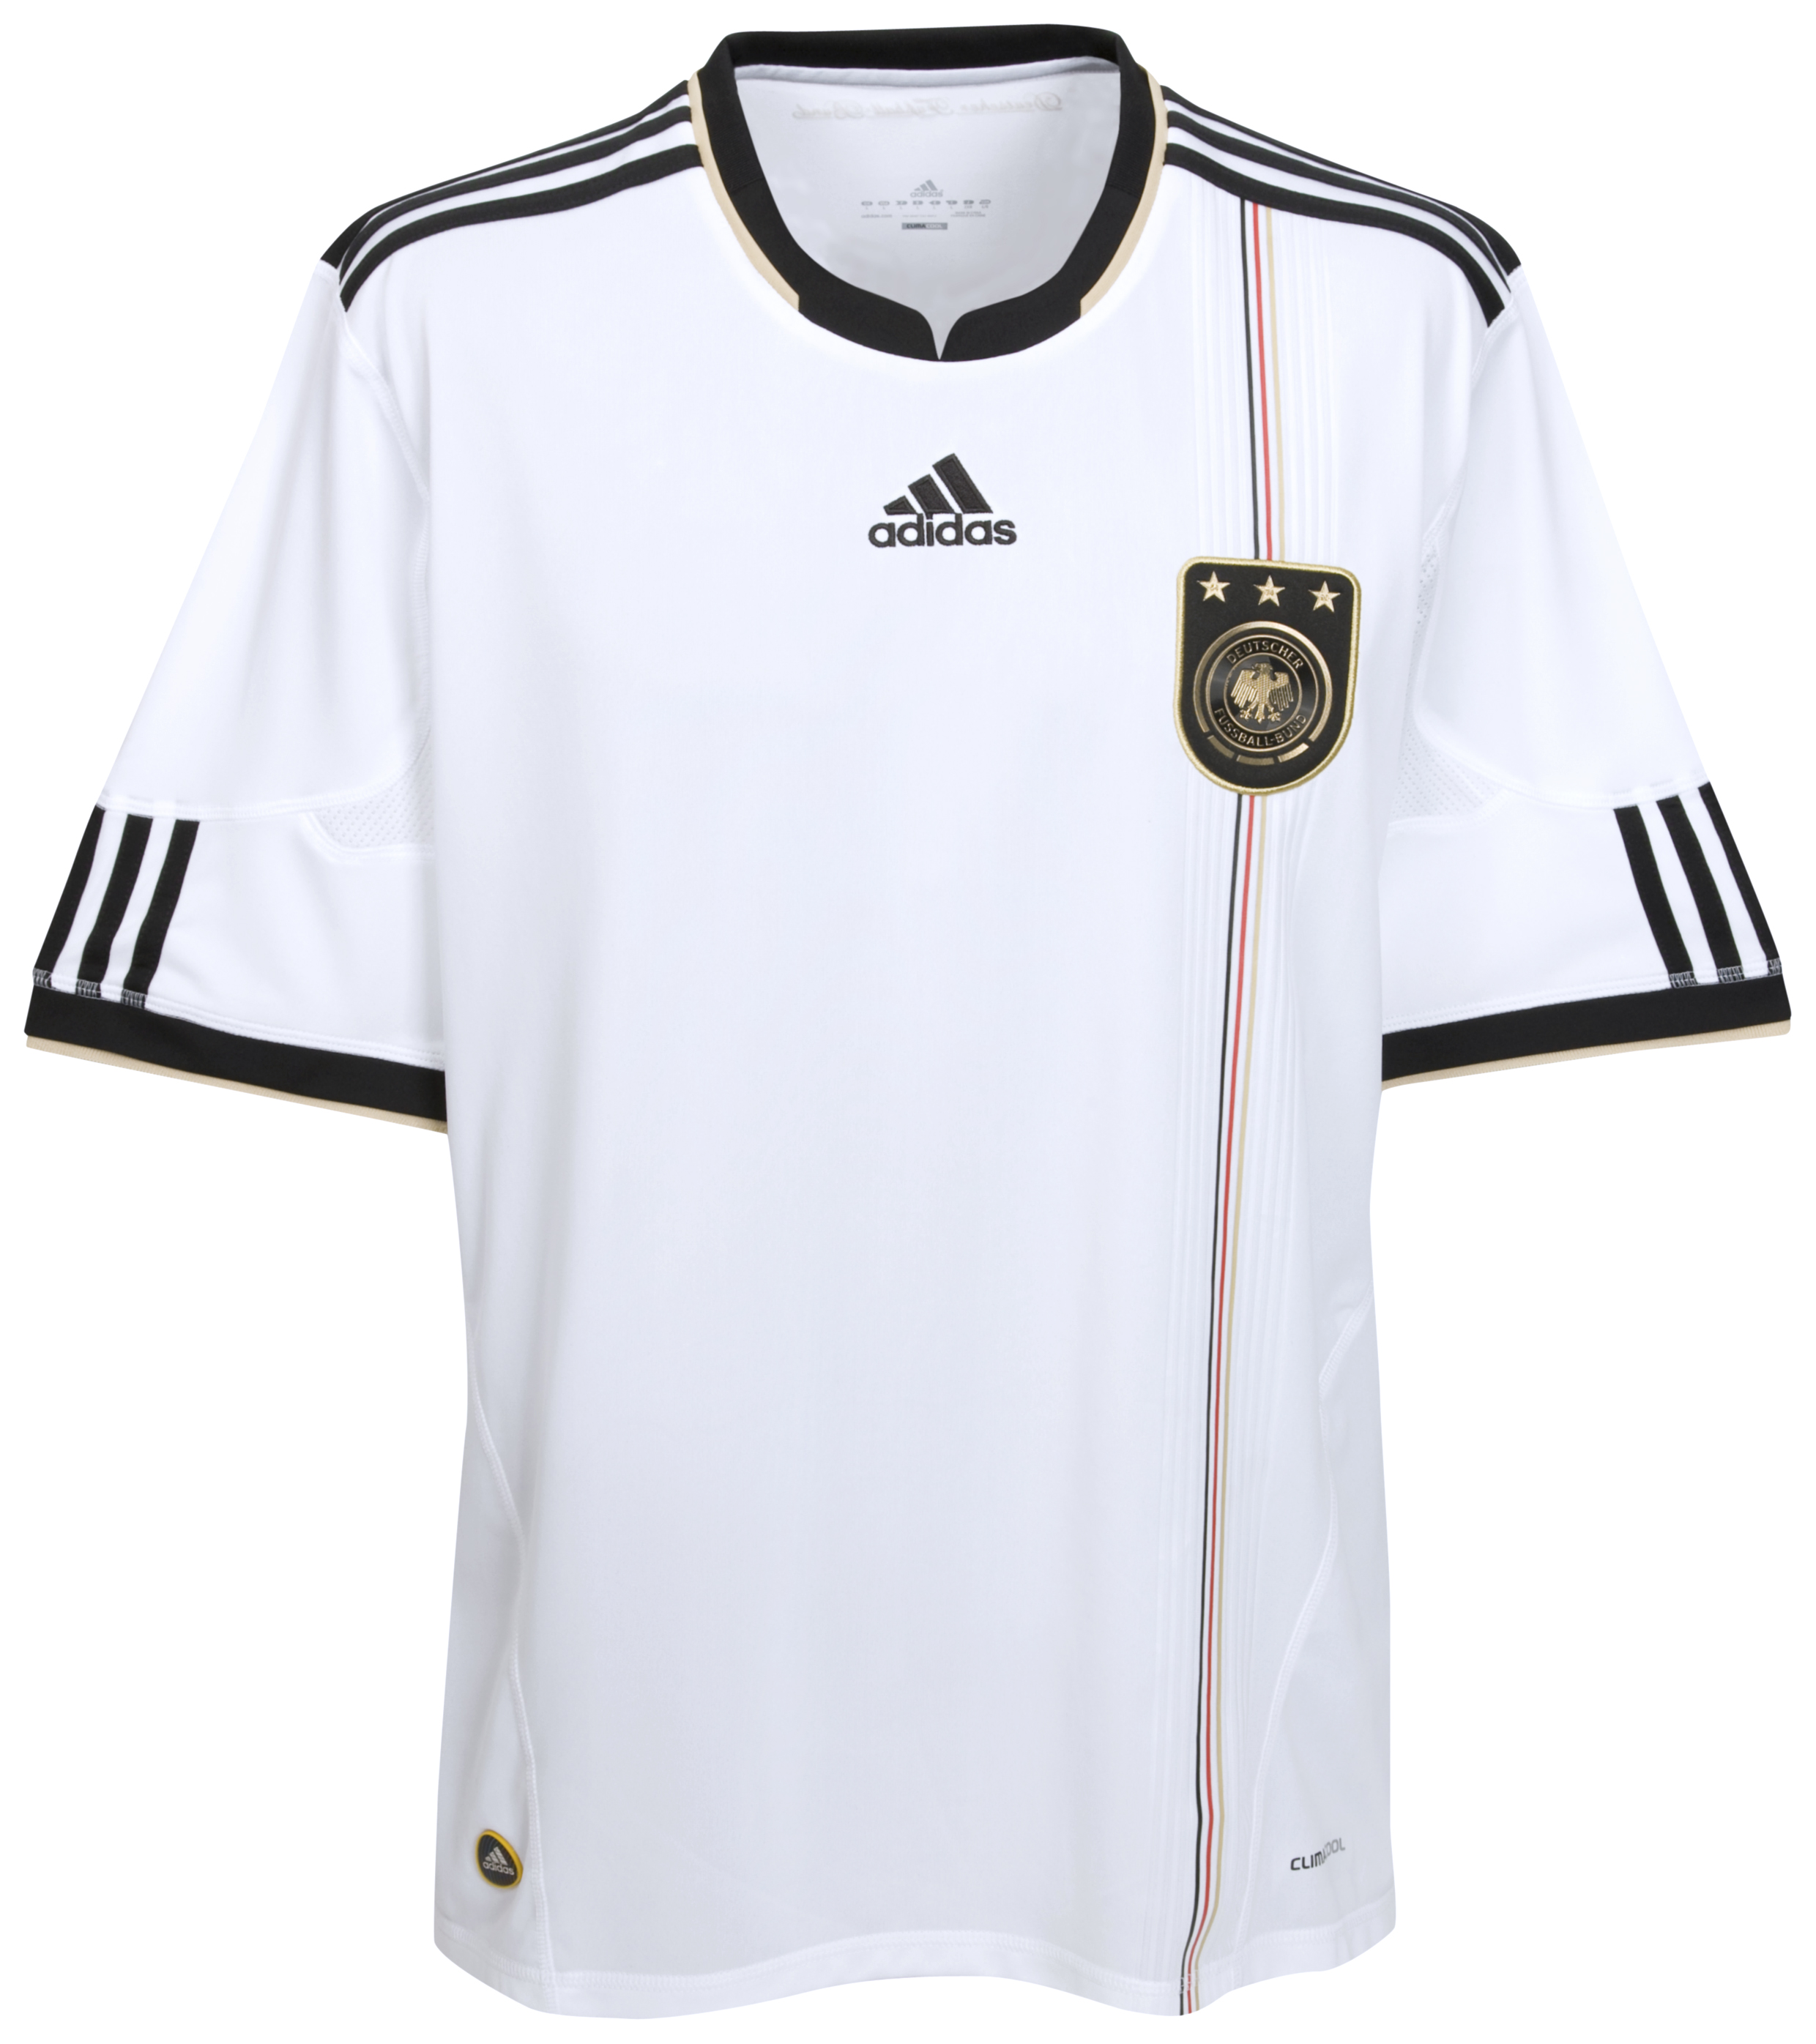 الملابس الخاصة بالمنتخبات في كأس العالم (جنوب أفريقيا 2010) Cfc-63741